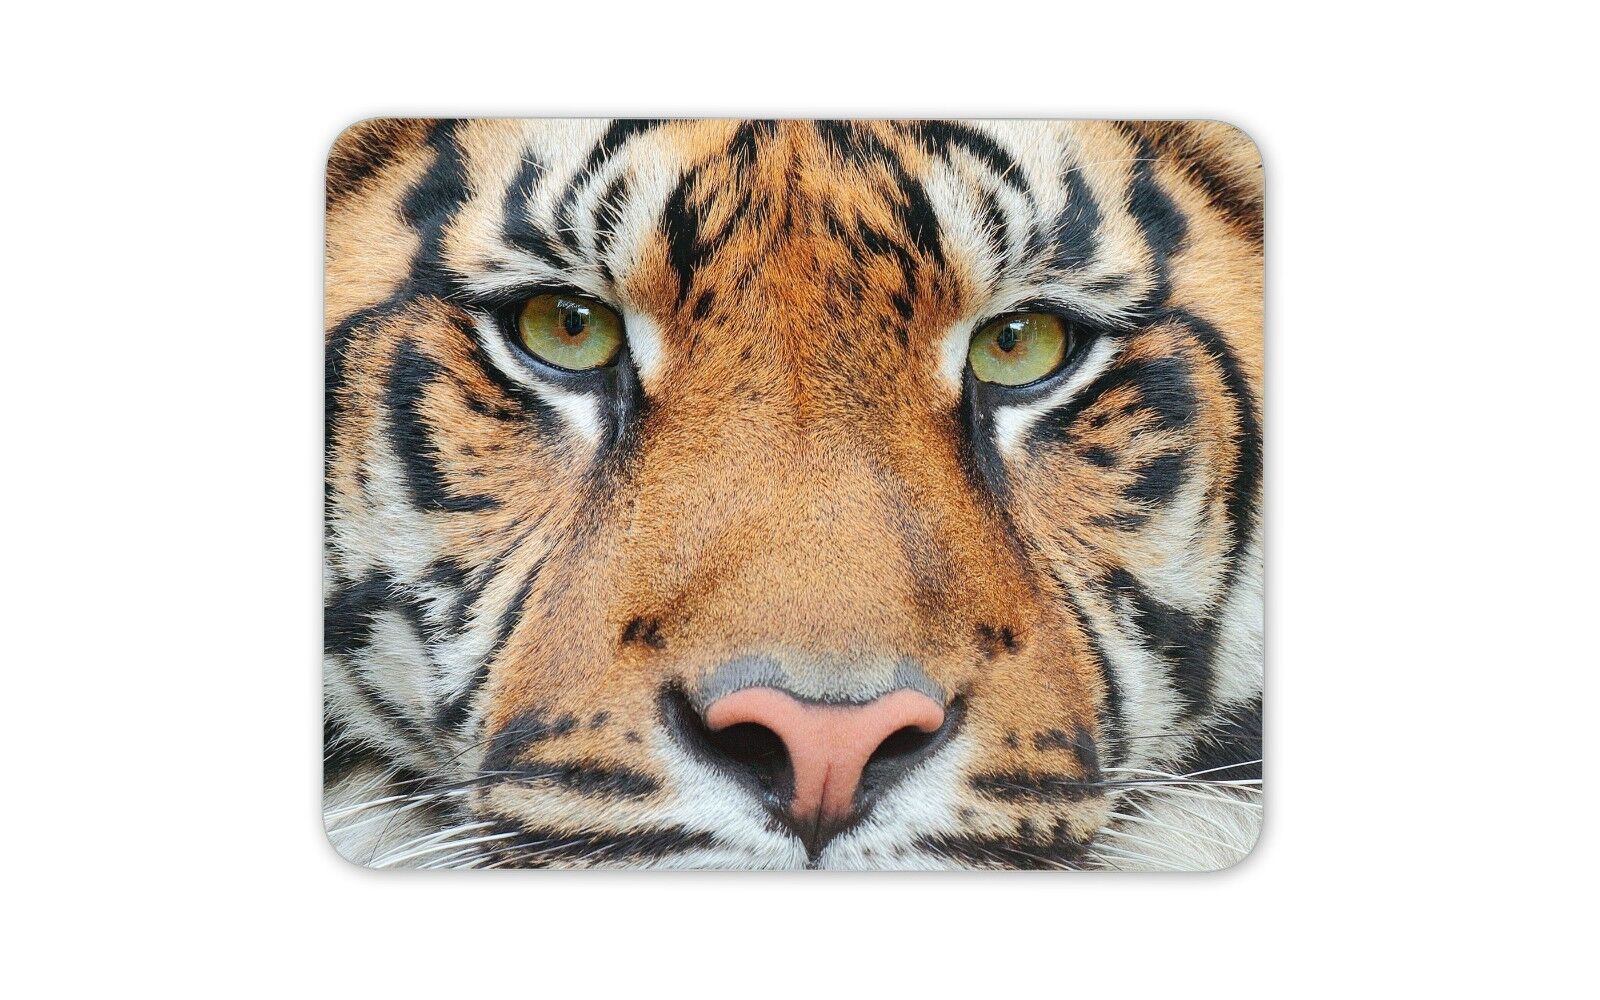 Tiger Face Close Up Mouse Mat Pad - Animal Big Cat Lion Wildlife Fun Gift #15044